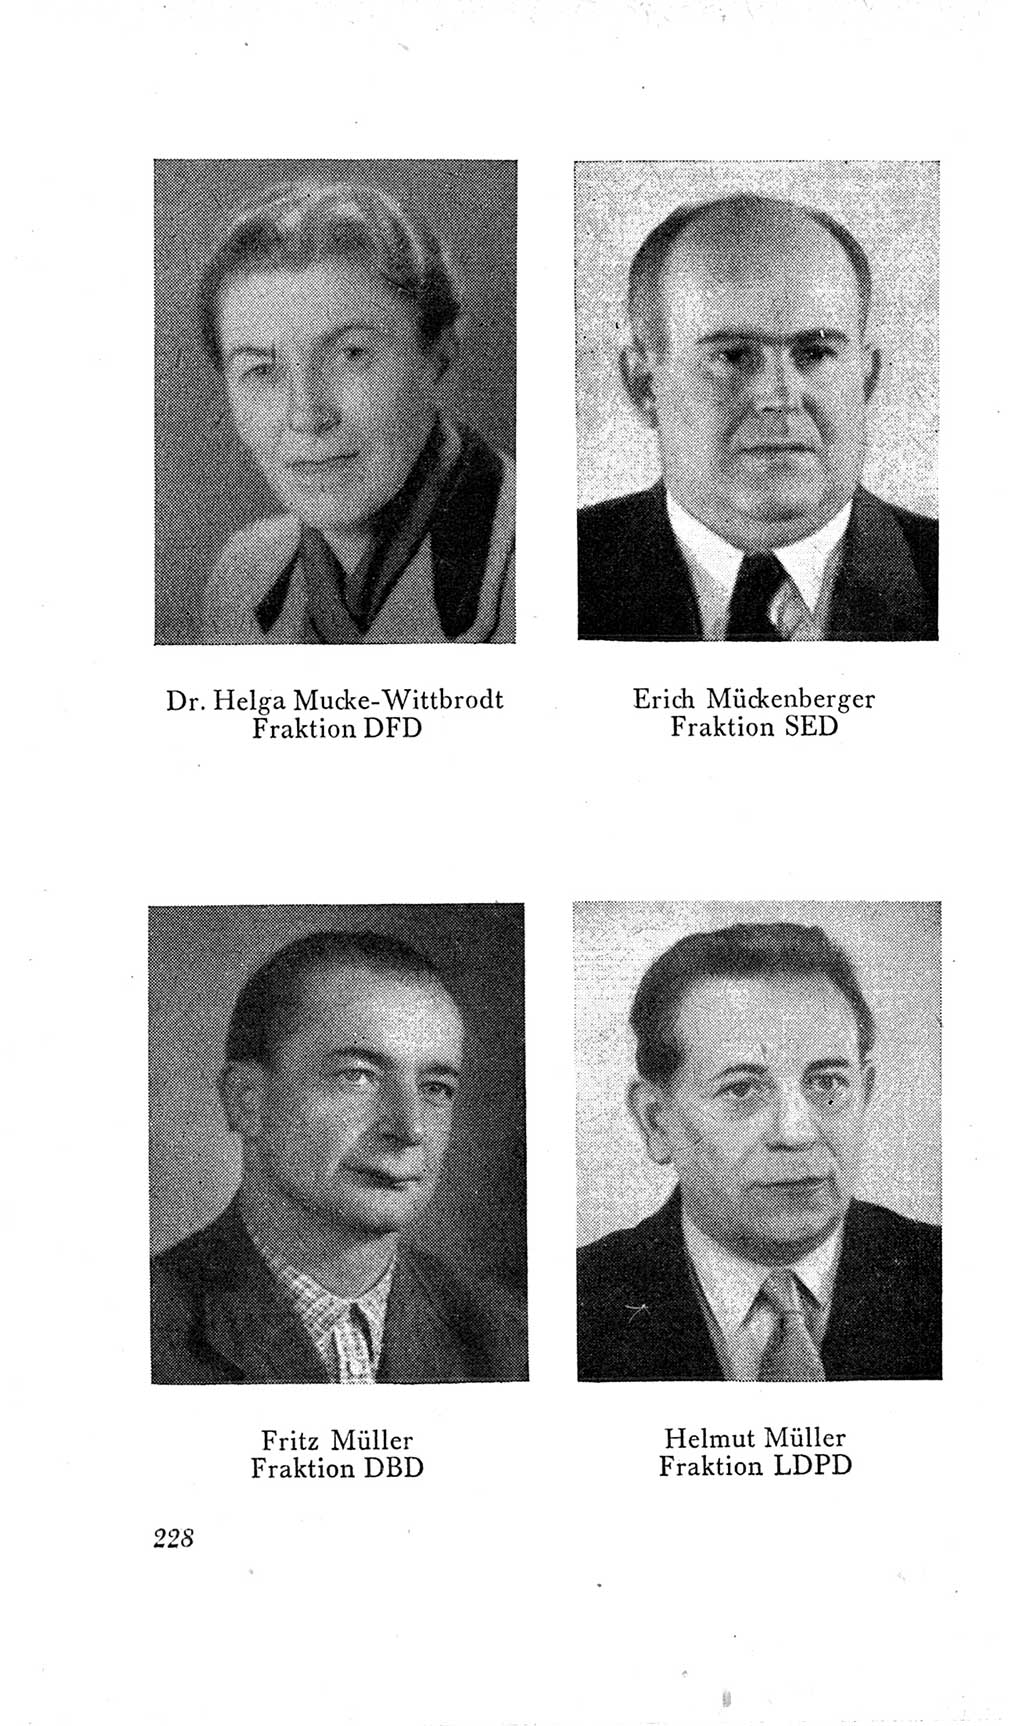 Handbuch der Volkskammer (VK) der Deutschen Demokratischen Republik (DDR), 2. Wahlperiode 1954-1958, Seite 228 (Hdb. VK. DDR, 2. WP. 1954-1958, S. 228)